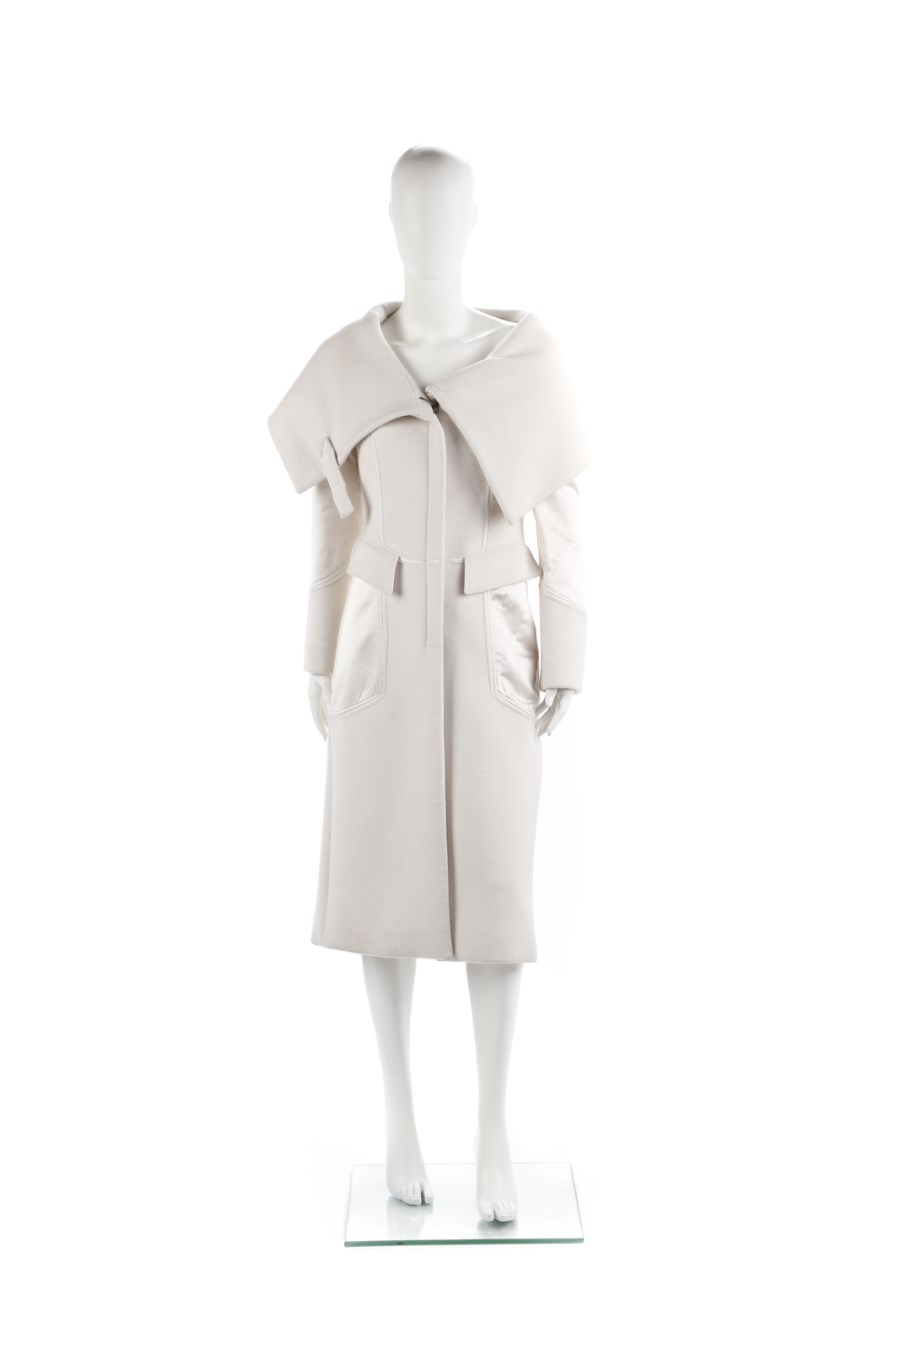 Collezione A/W 2003. Direttore Creativo Tom Ford. Cappotto bianco lungo con ampio scollo e chiusura a zip, inserti in raso bianco con tasche laterali. Taglia 42IT. (Gucci )